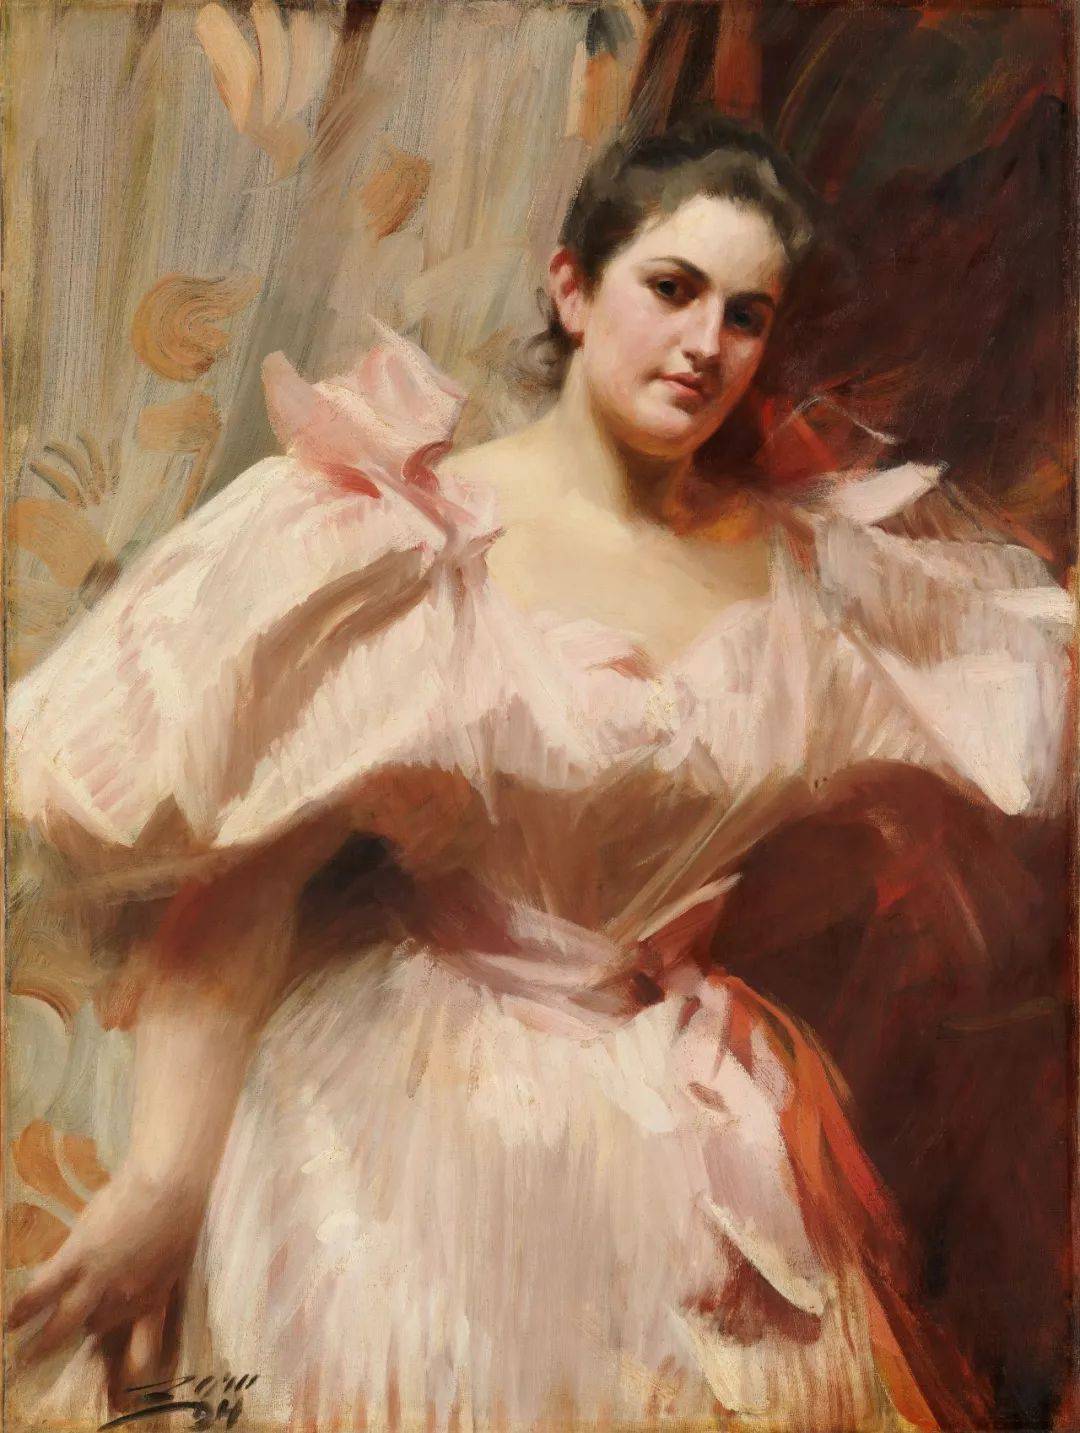 佐恩1888年后转油画, 豪放的笔触描绘对象,很快成为欧洲知名画家.